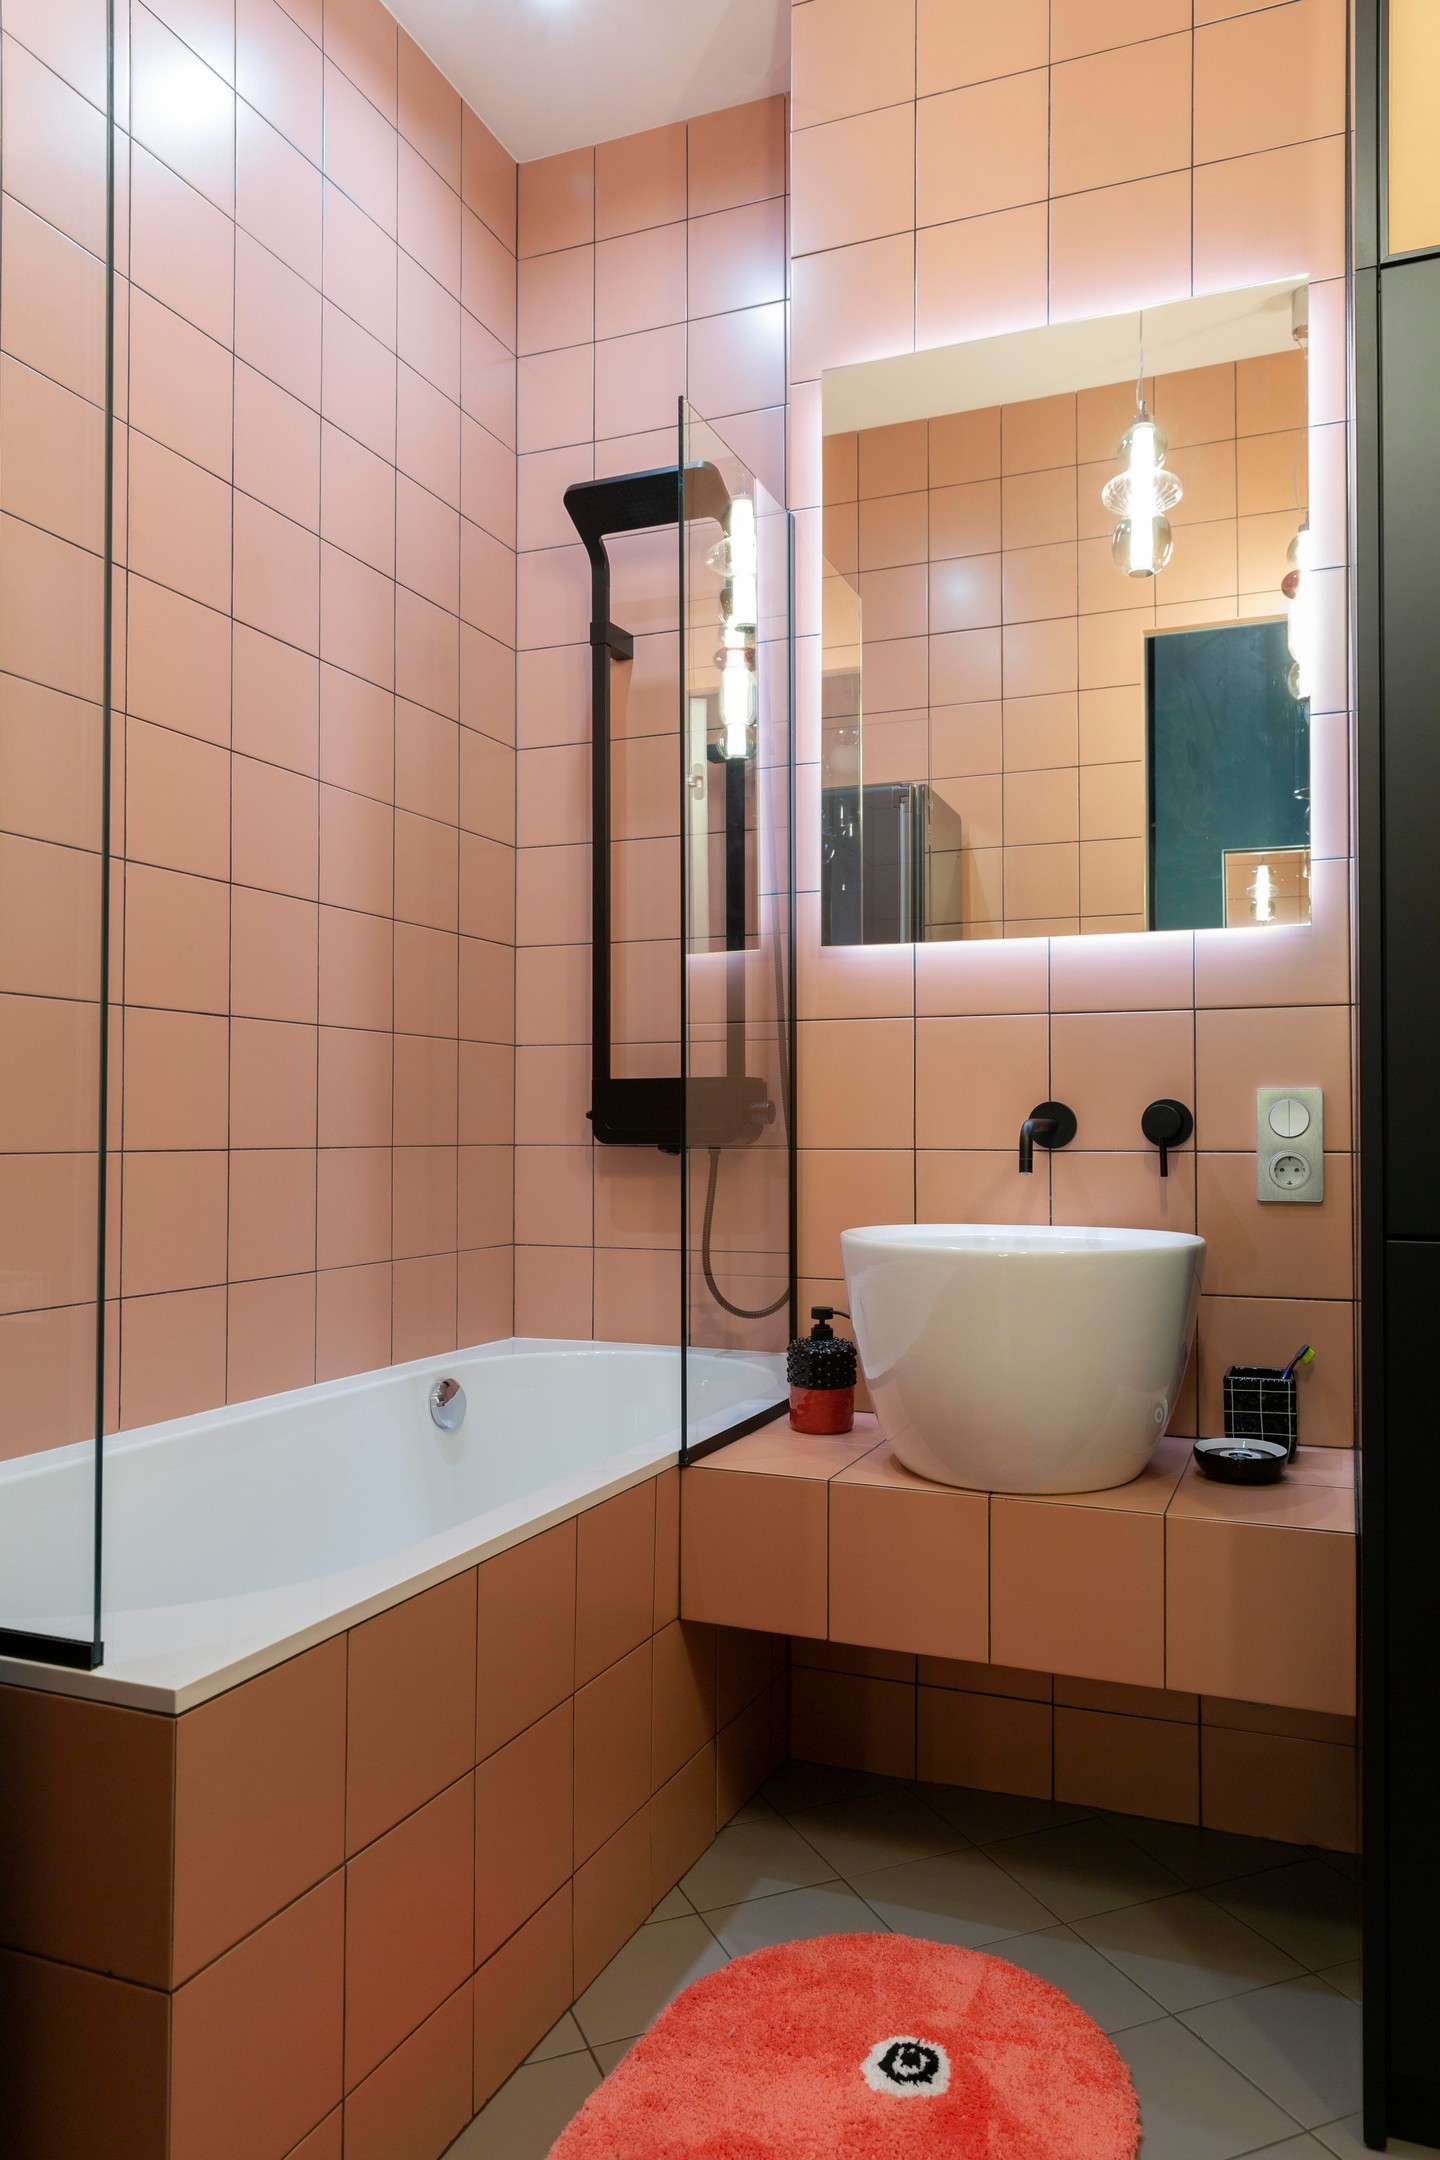 Khu vực bồn tắm nằm được phân vùng với nhà vệ sinh bằng cửa kính trong suốt, bên dưới sàn nhà bố trí một tấm thảm trải sàn hình oval màu cam đậm bắt mắt. Tấm gương tích hợp đèn Led trên tường bồn rửa cho căn phòng bừng sáng hơn!